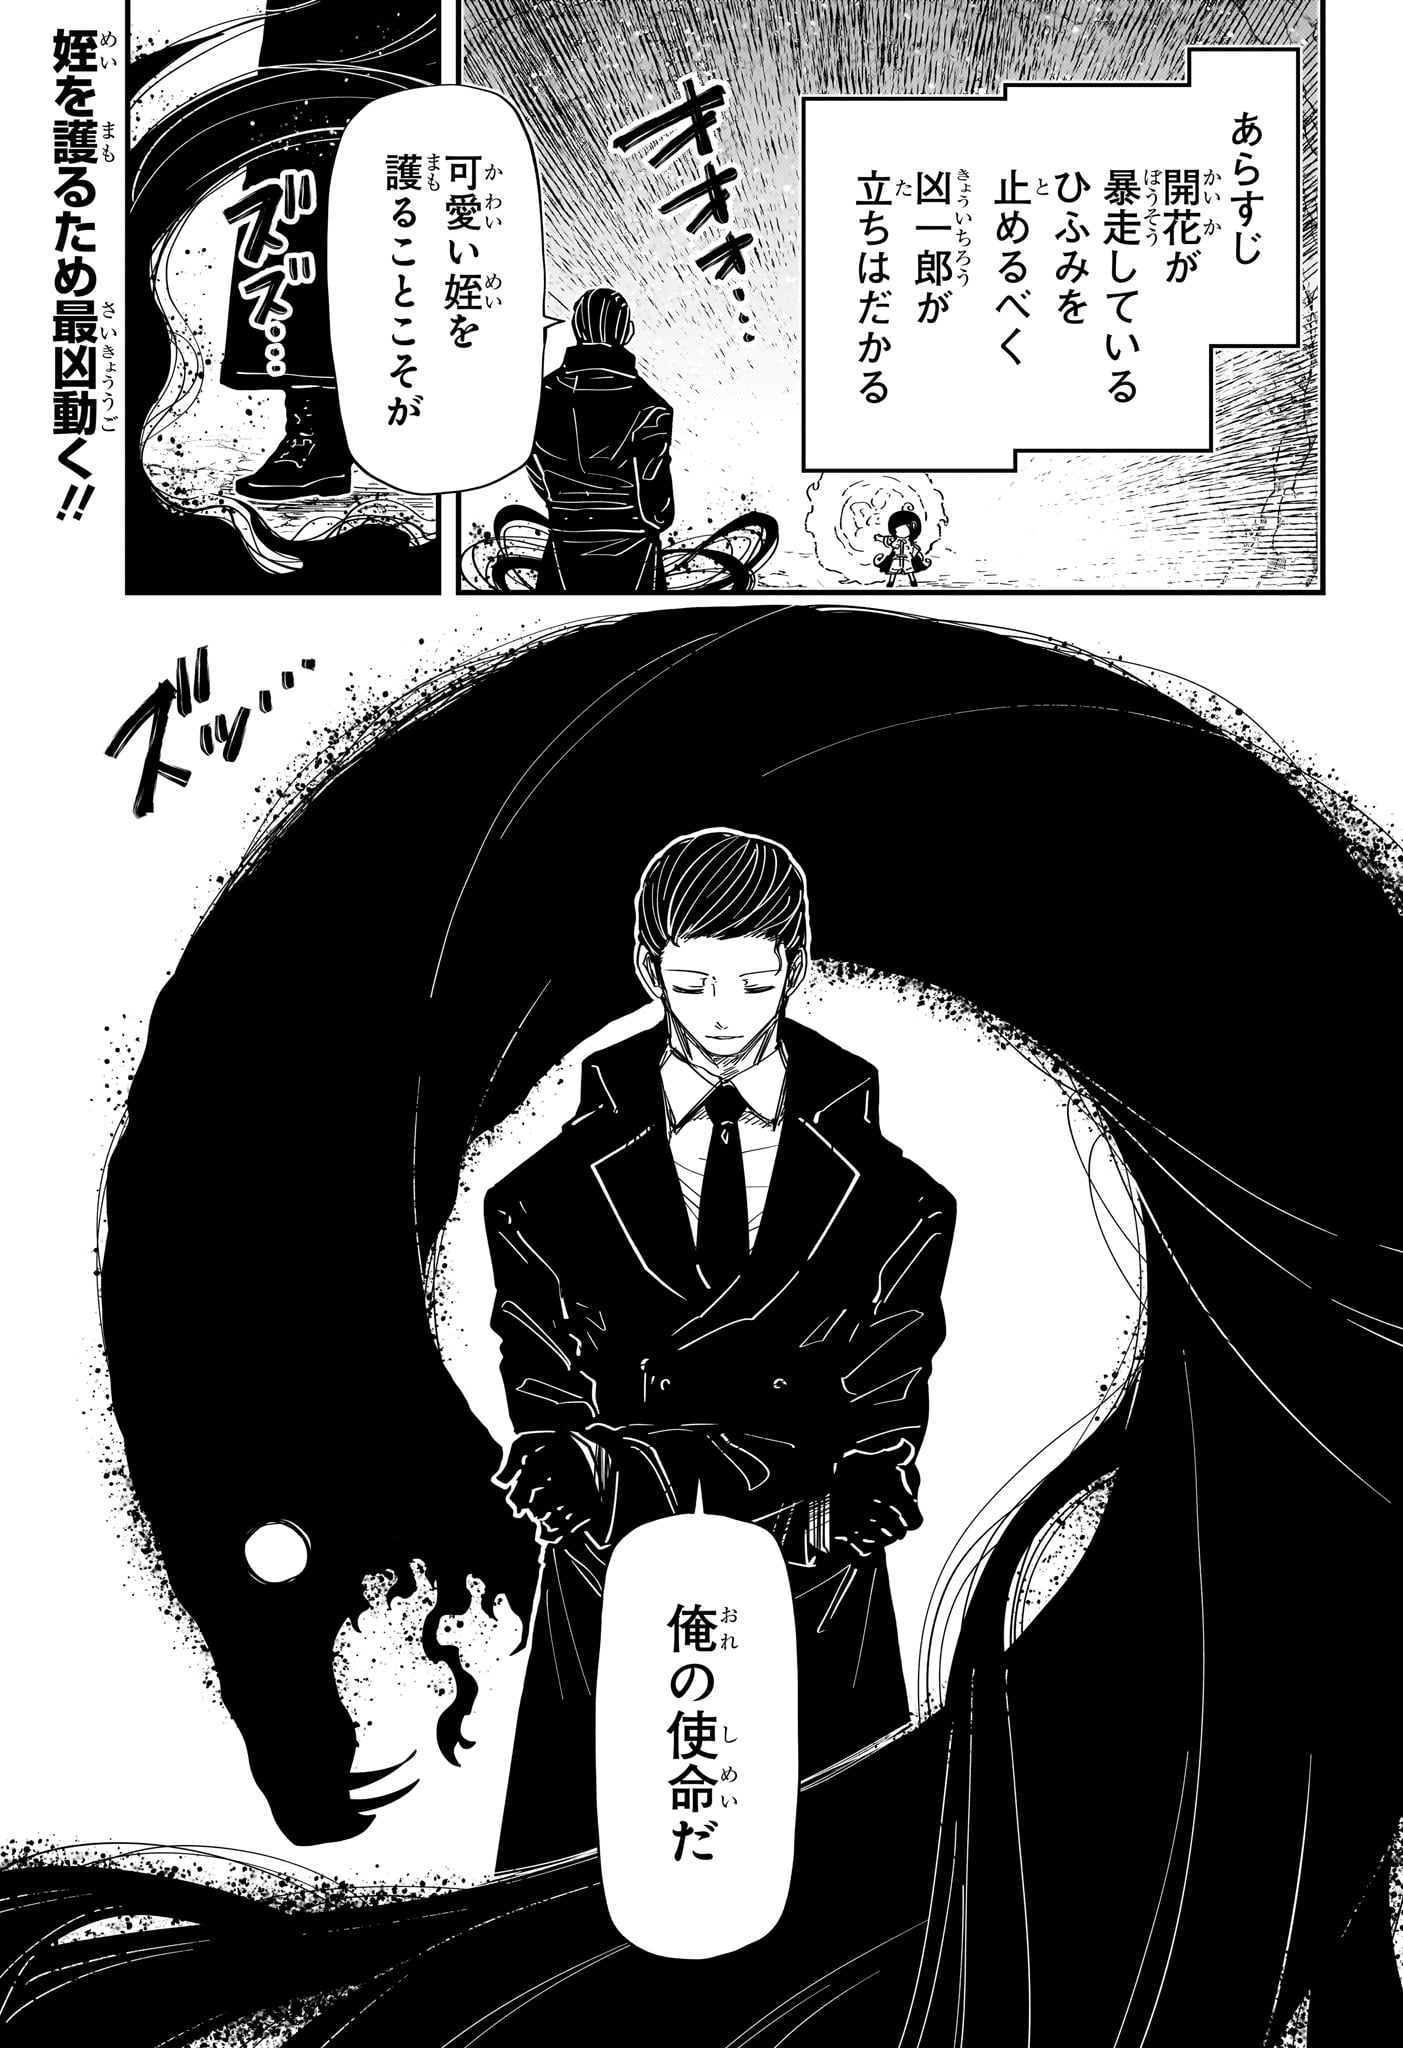 Yozakura-san Chi no Daisakusen - Chapter 215 - Page 2